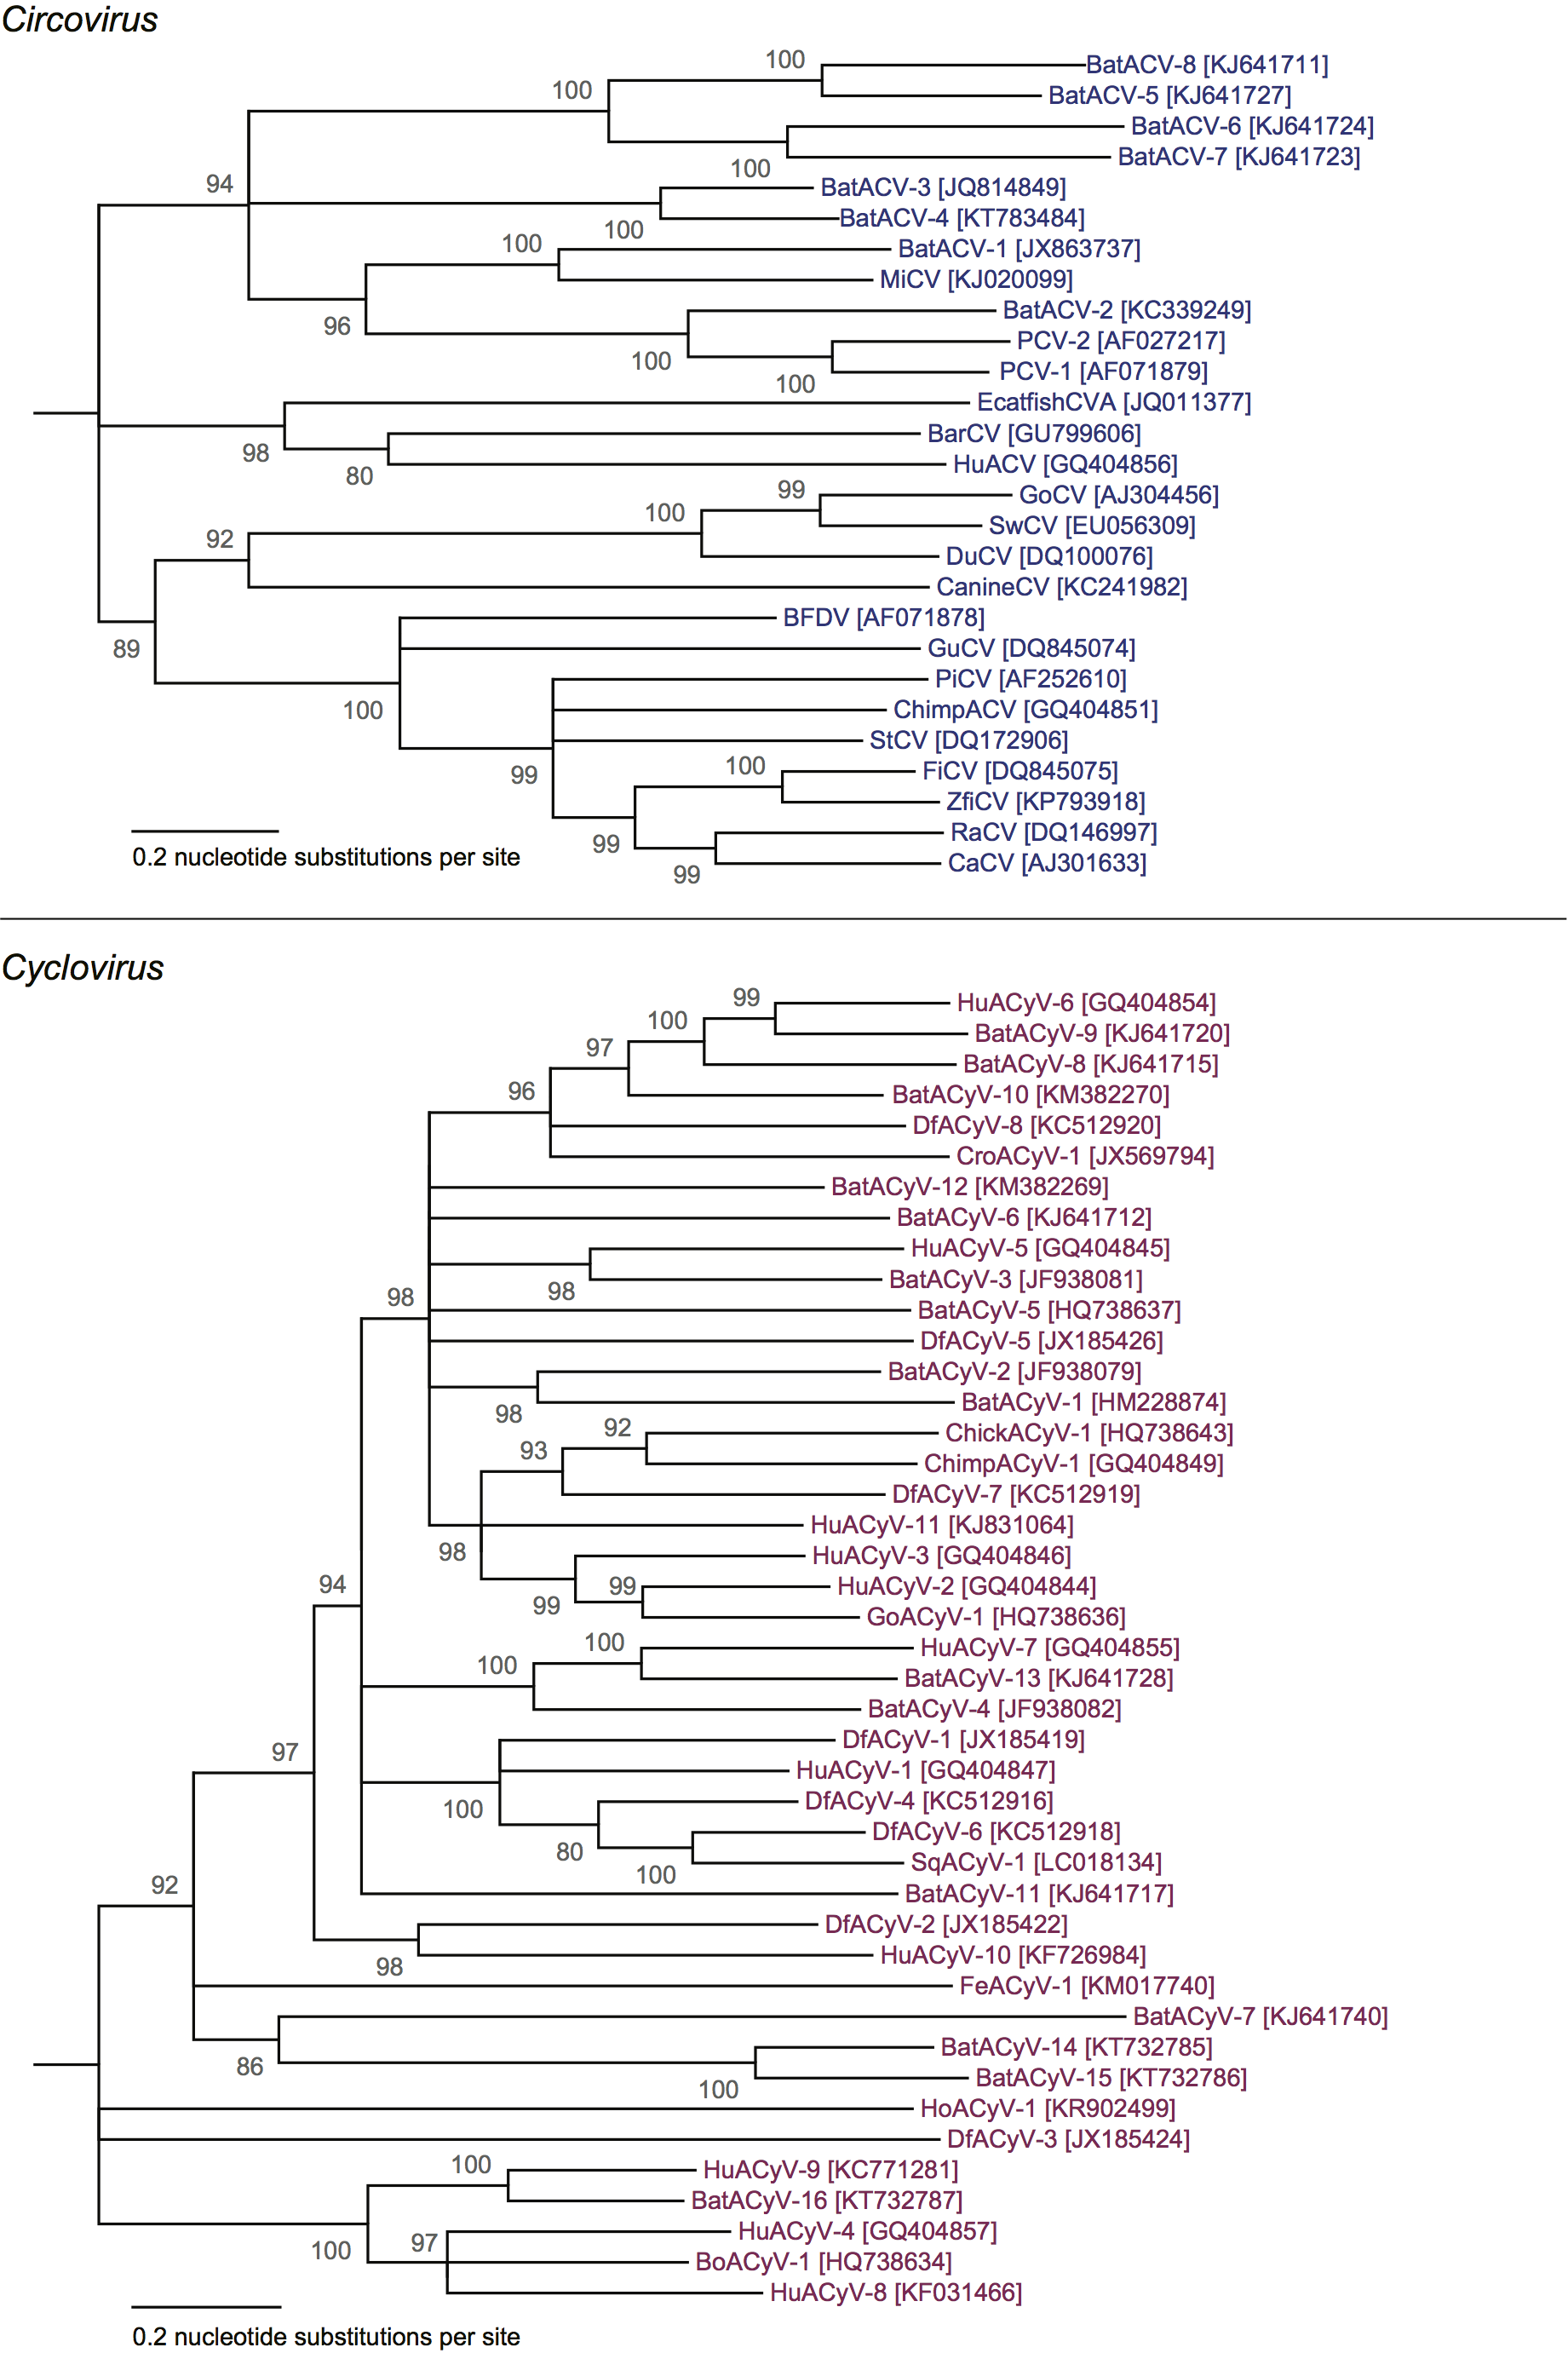 Phylogenetic tree - Circoviridae